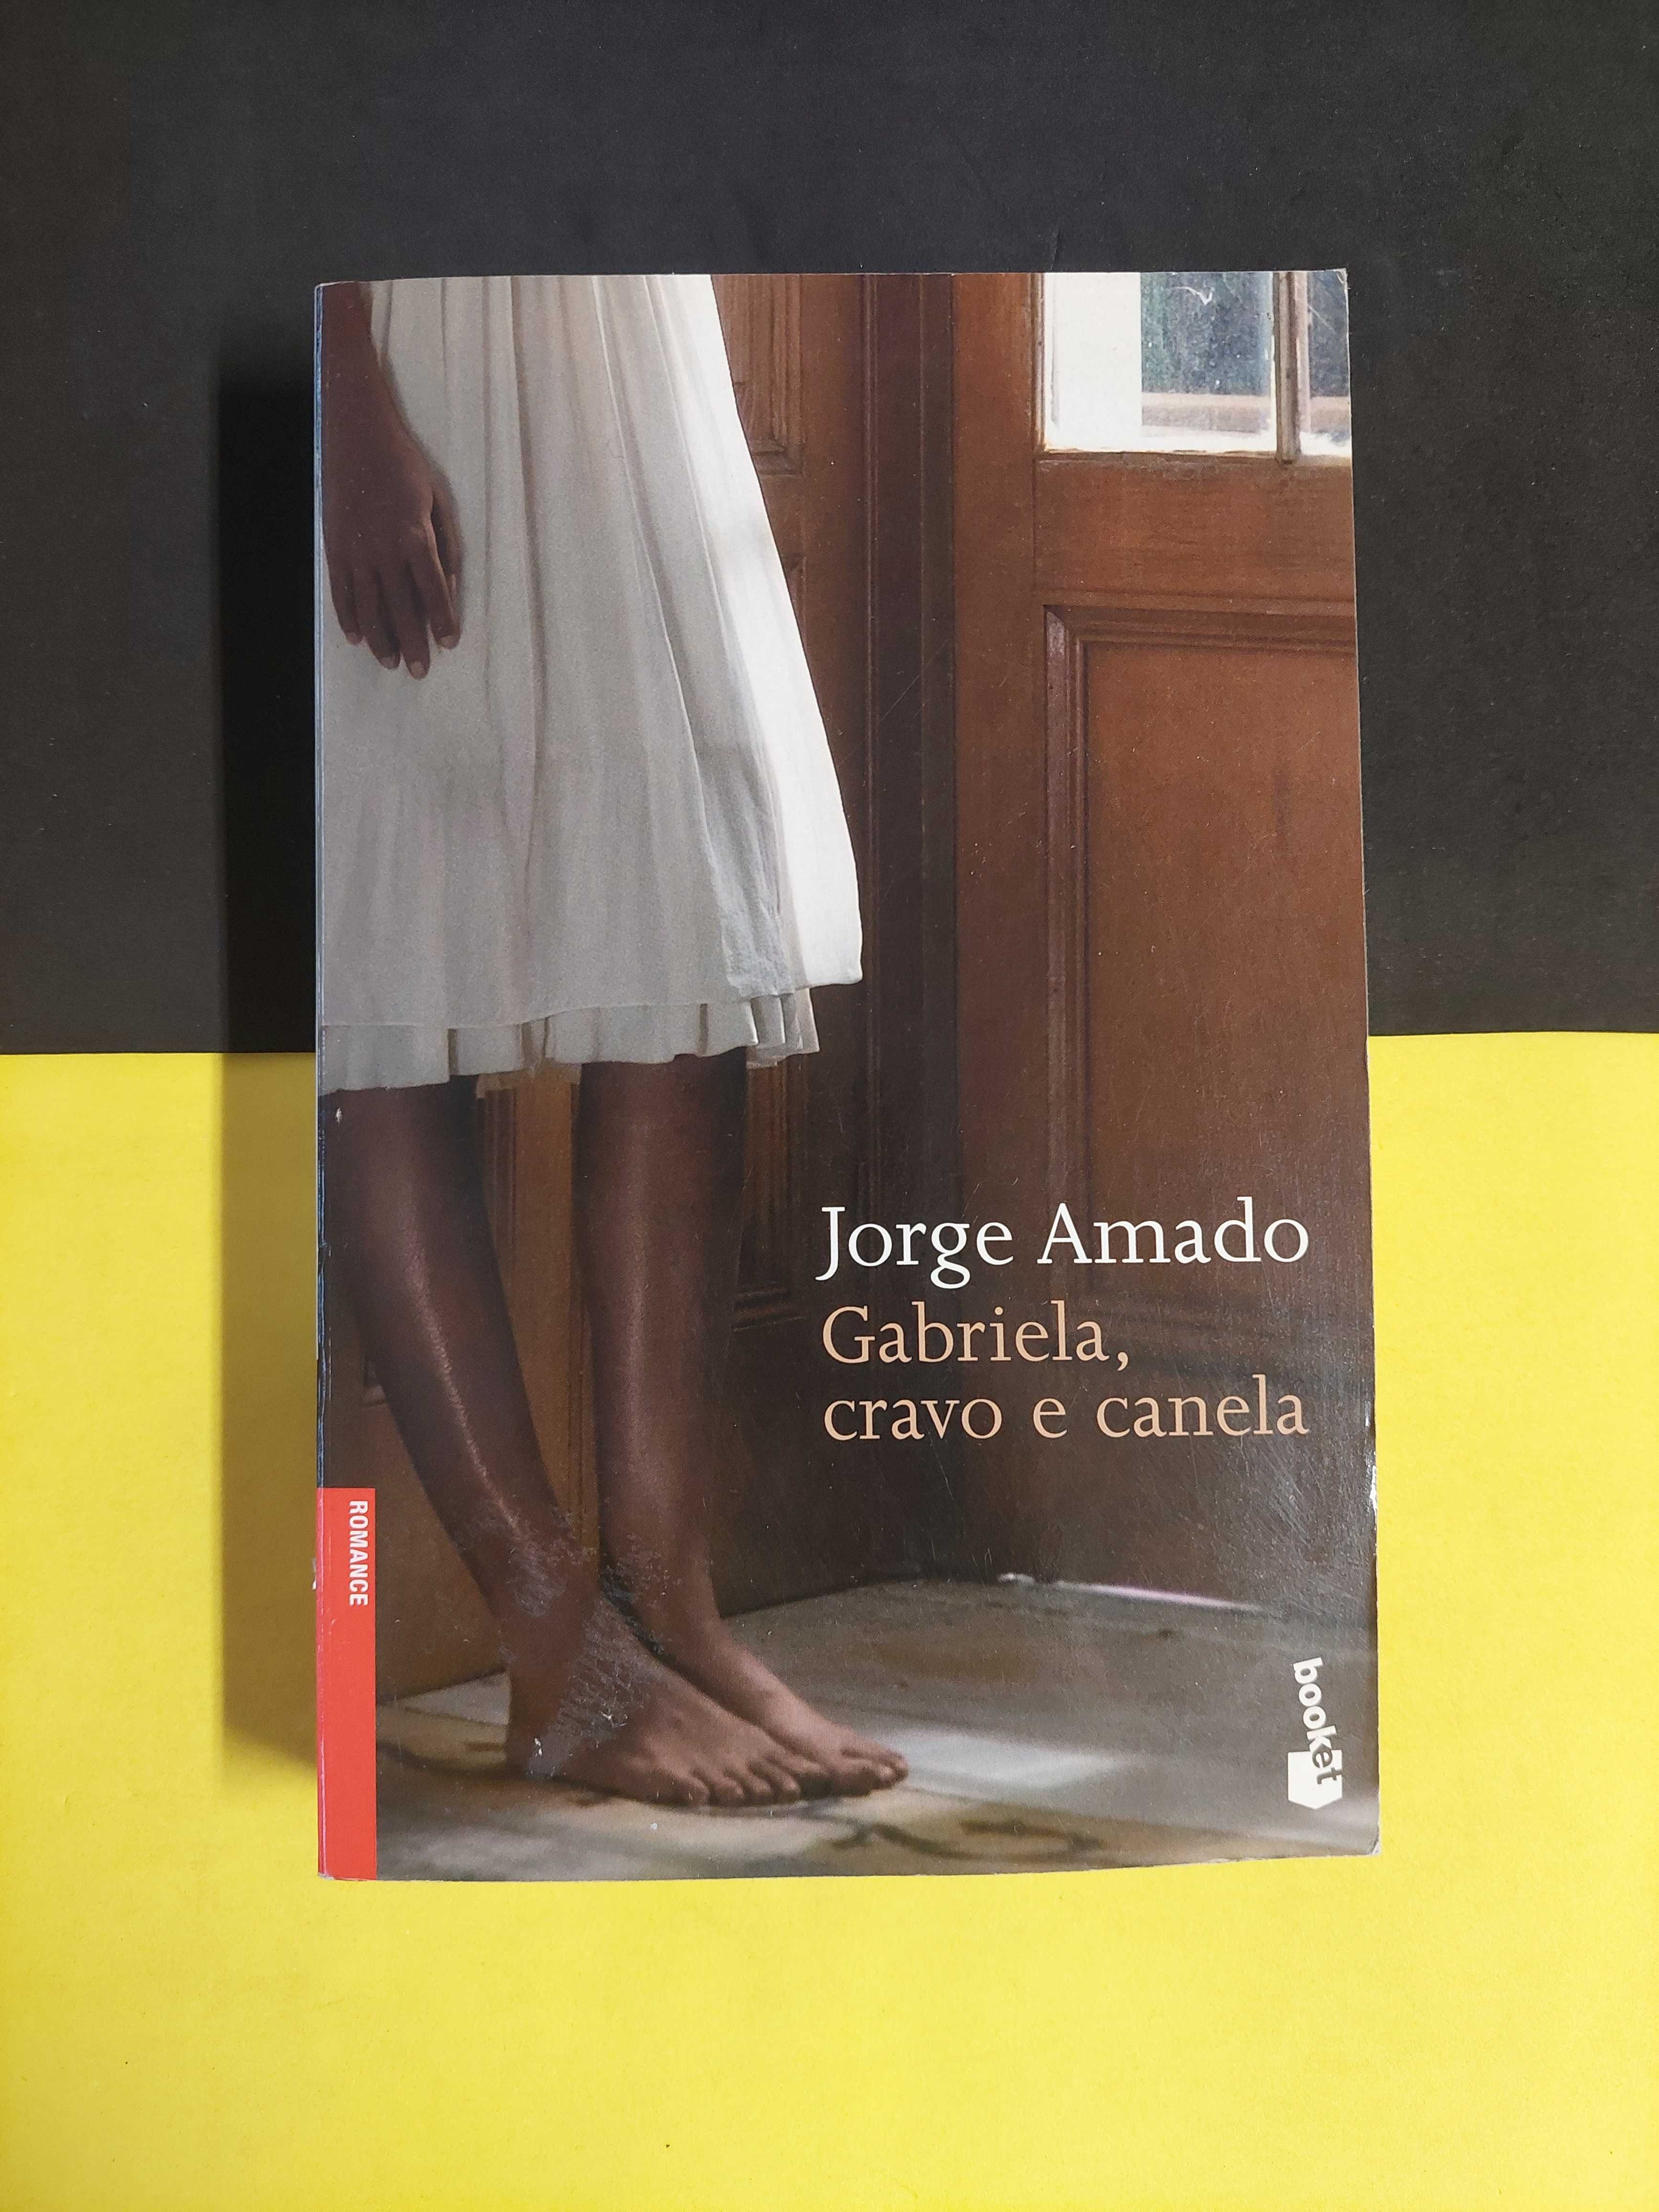 Jorge Amado - Gabriela, cravo e canela